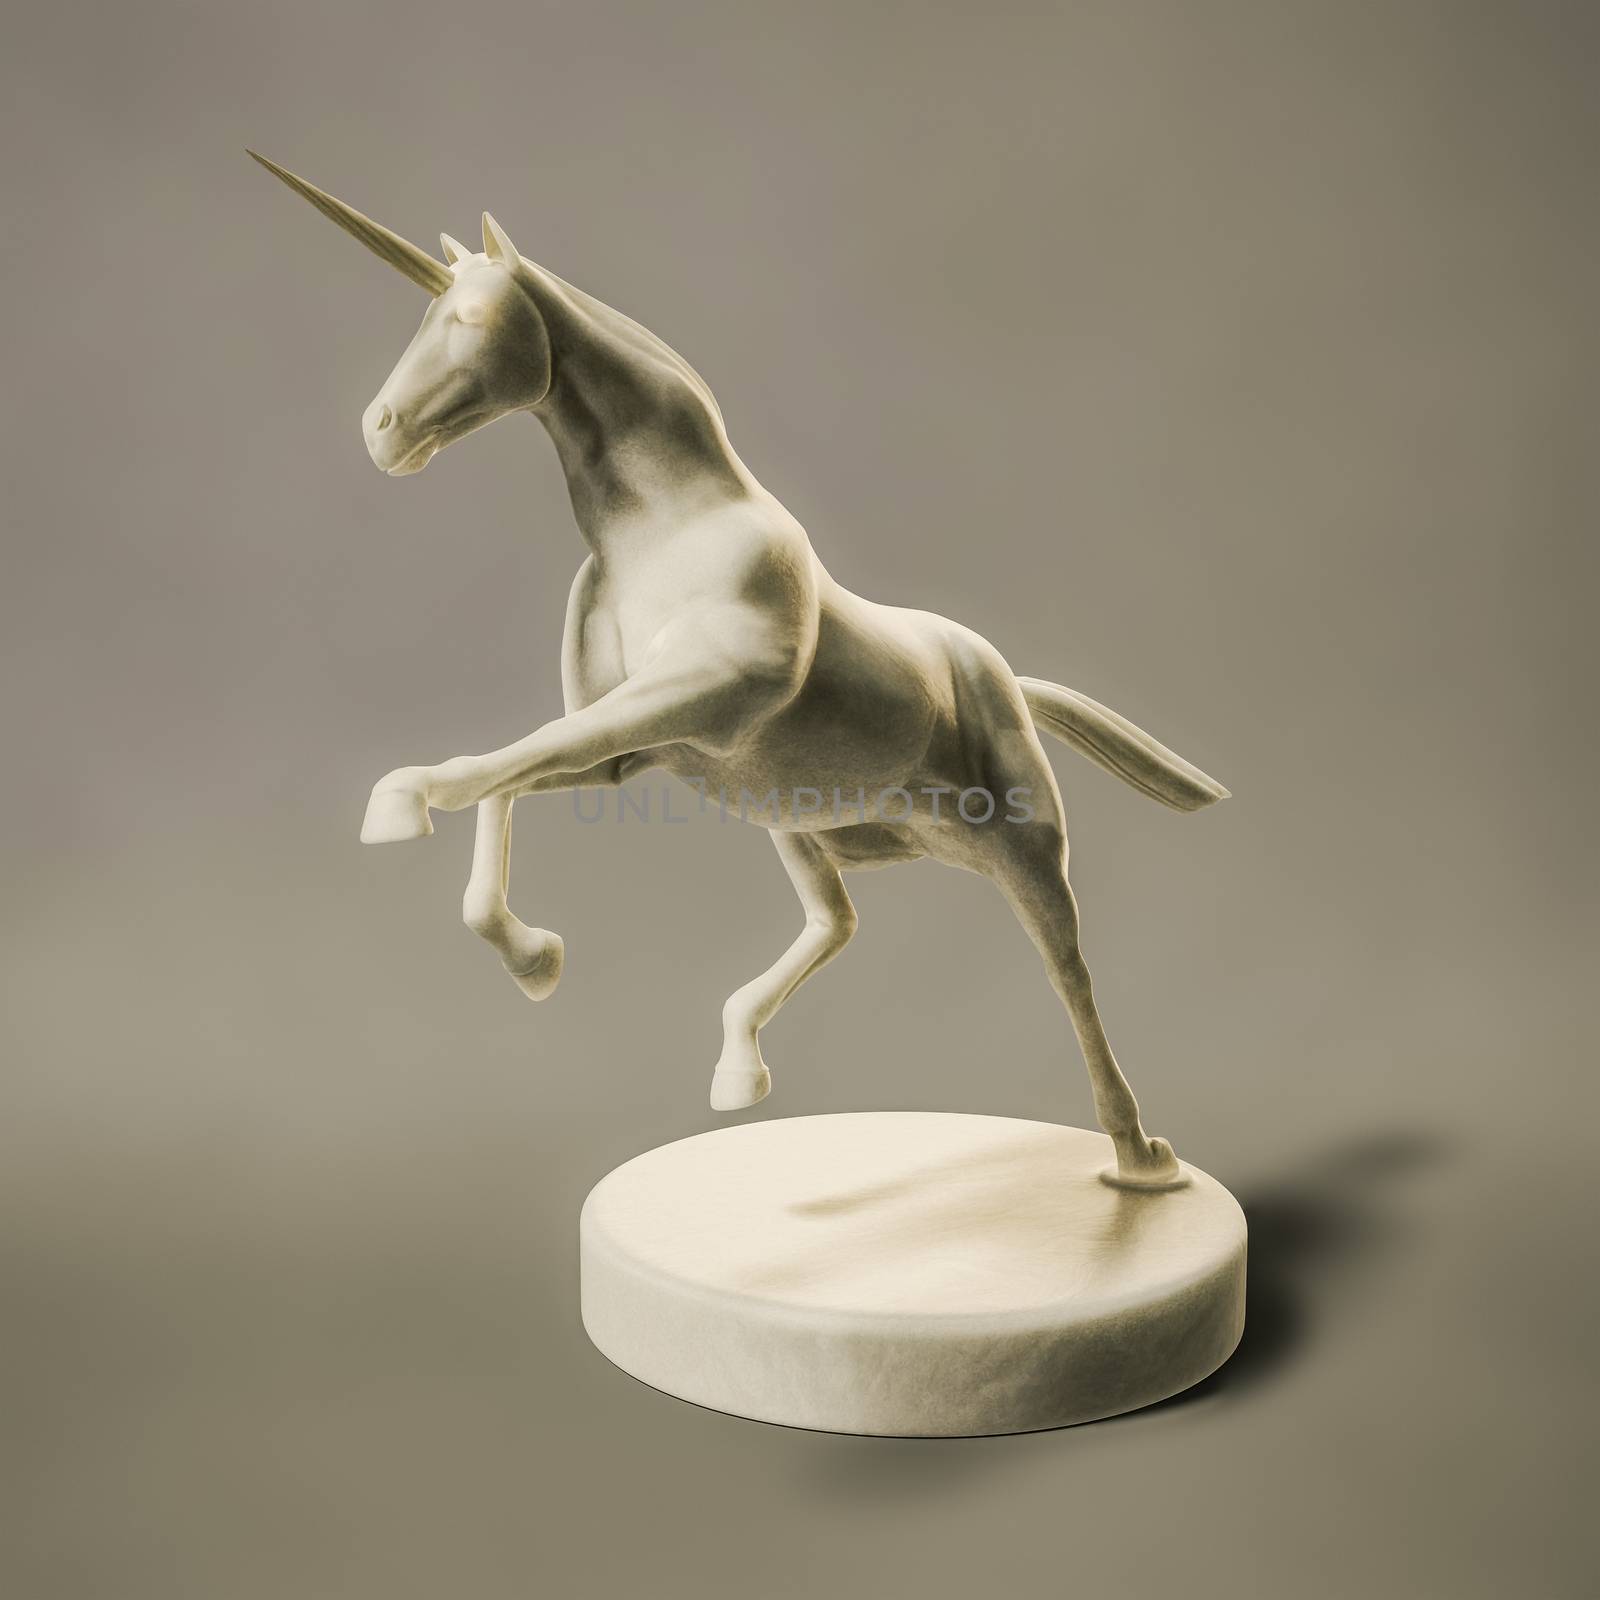 a beautyful marble unicorn figure by magann